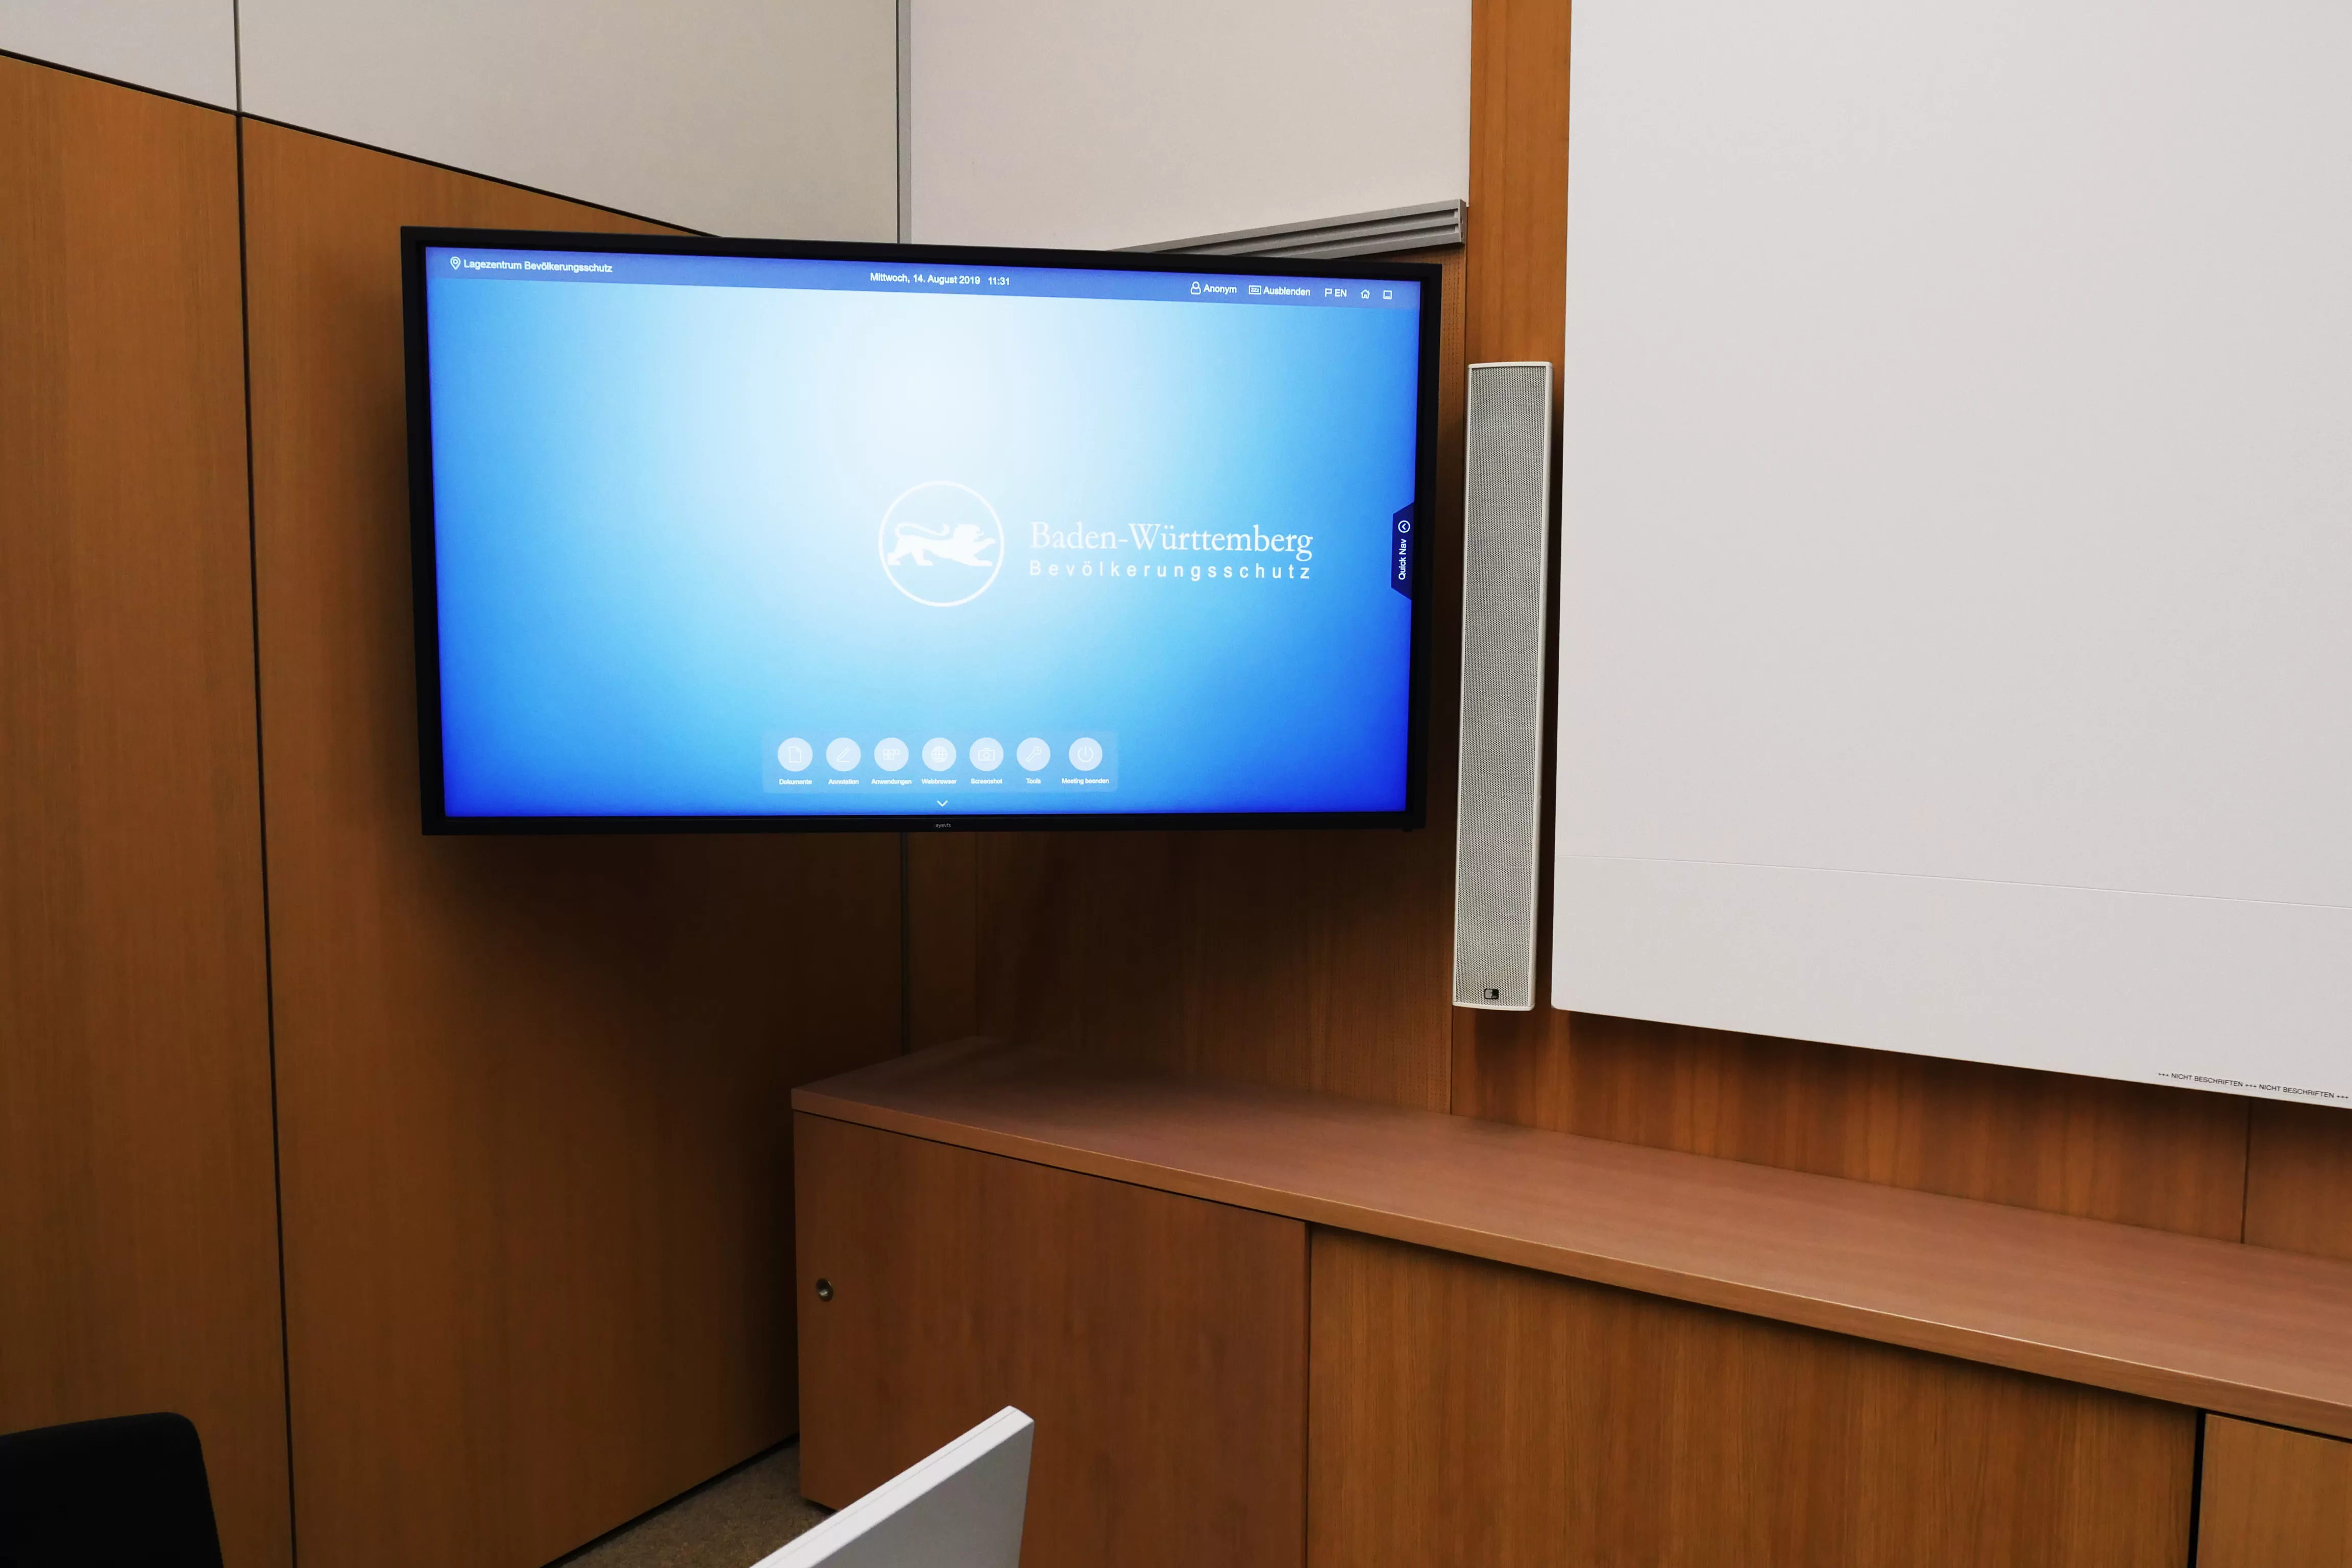 Im Eingangsbereich lädt eine Sitzecke zum Verweilen ein. Ein beeindruckender Großbildschirm in Form einer interaktiven Multi-Touch Powerwall inszeniert dort die Marke Schuler und deren Produkte.